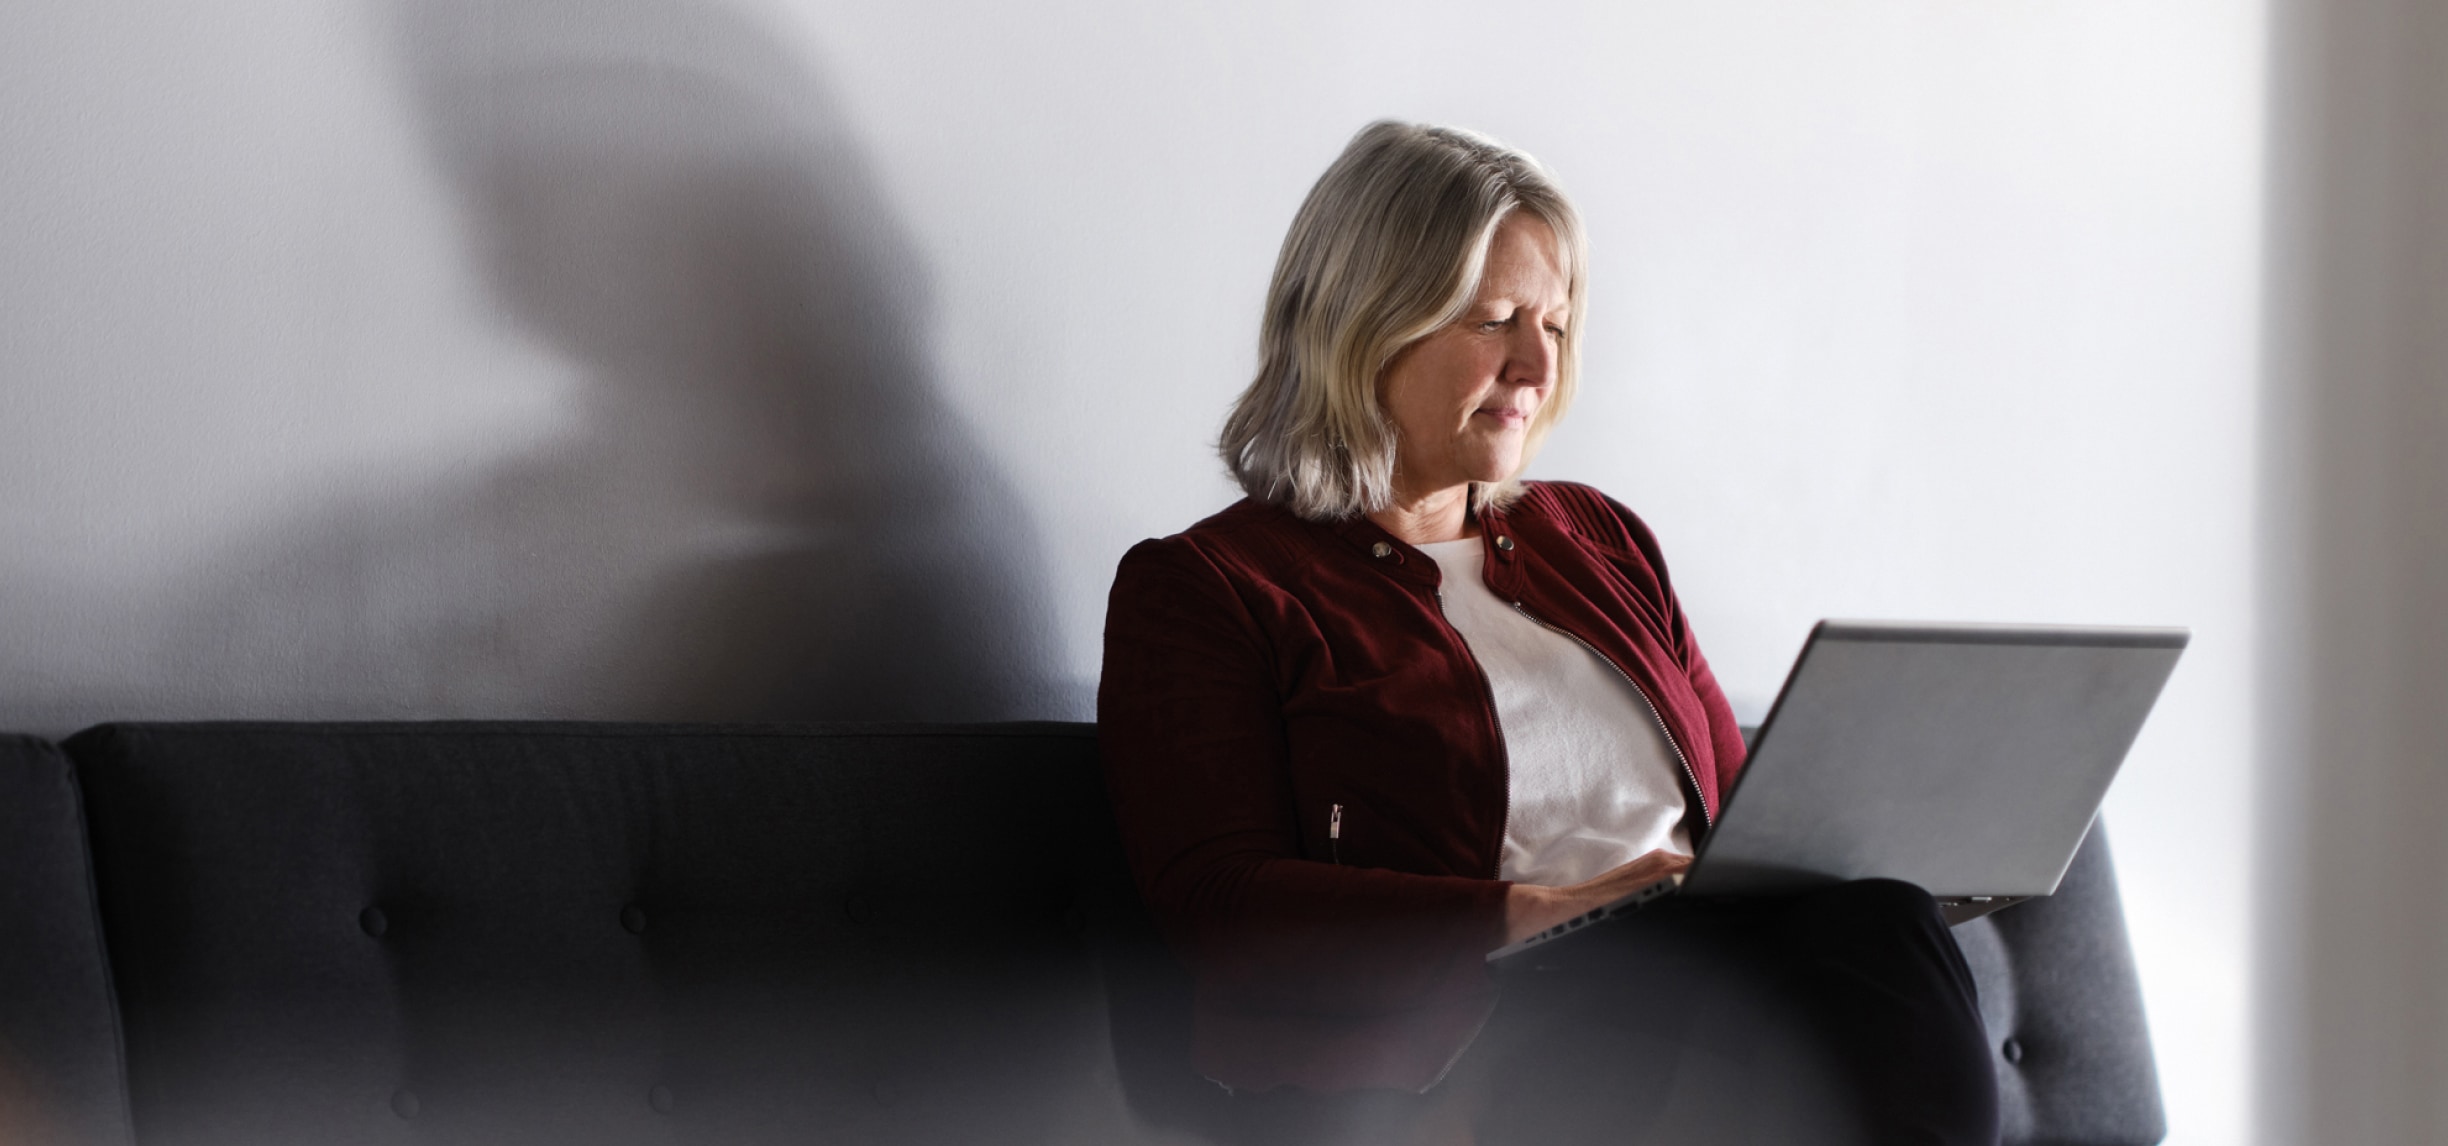 Una donna seduta su un divano nero mentre usa un portatile